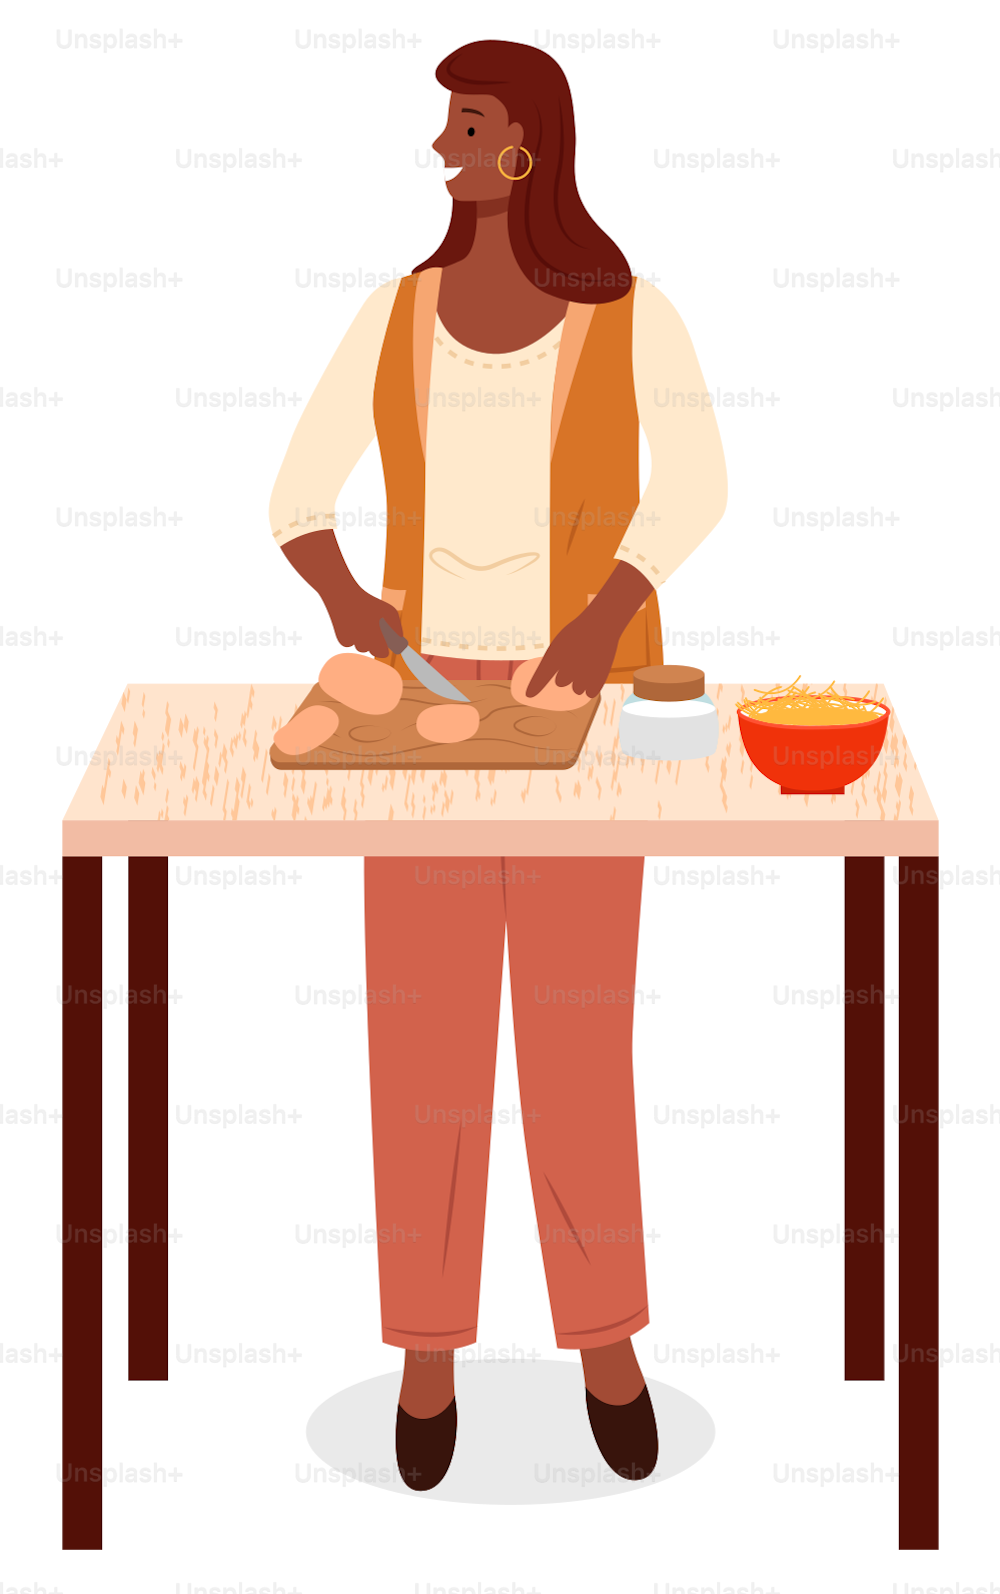 Femme debout près de la table, personne seule dans la cuisine. Dame coupant des légumes frais, pommes de terre au couteau. Ustensiles de cuisine et bol, couverts et produits sur le bureau. Illustration vectorielle du processus de cuisson à plat